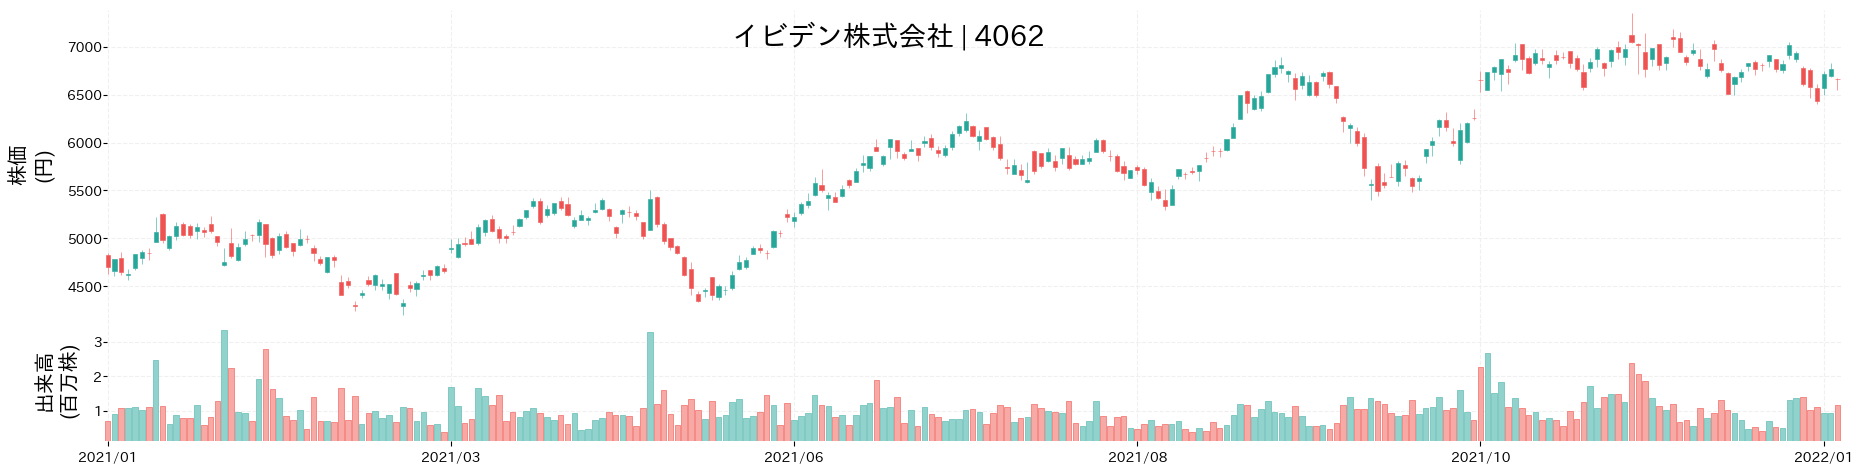 イビデンの株価推移(2021)